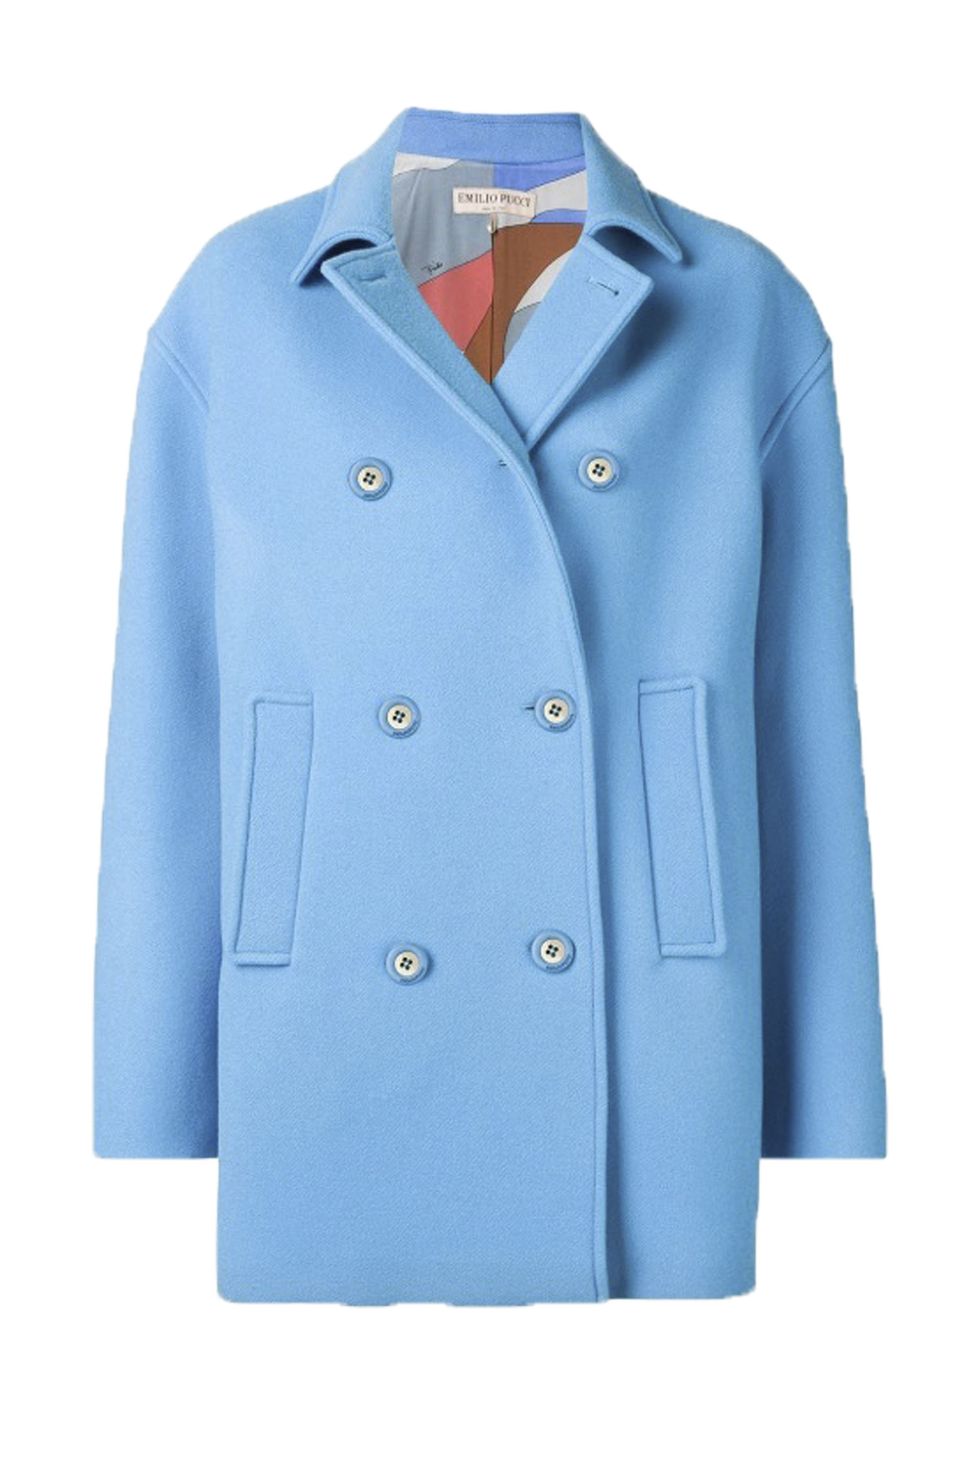 Clothing, Outerwear, Blue, Coat, Sleeve, Jacket, Turquoise, Trench coat, Blazer, Overcoat, 